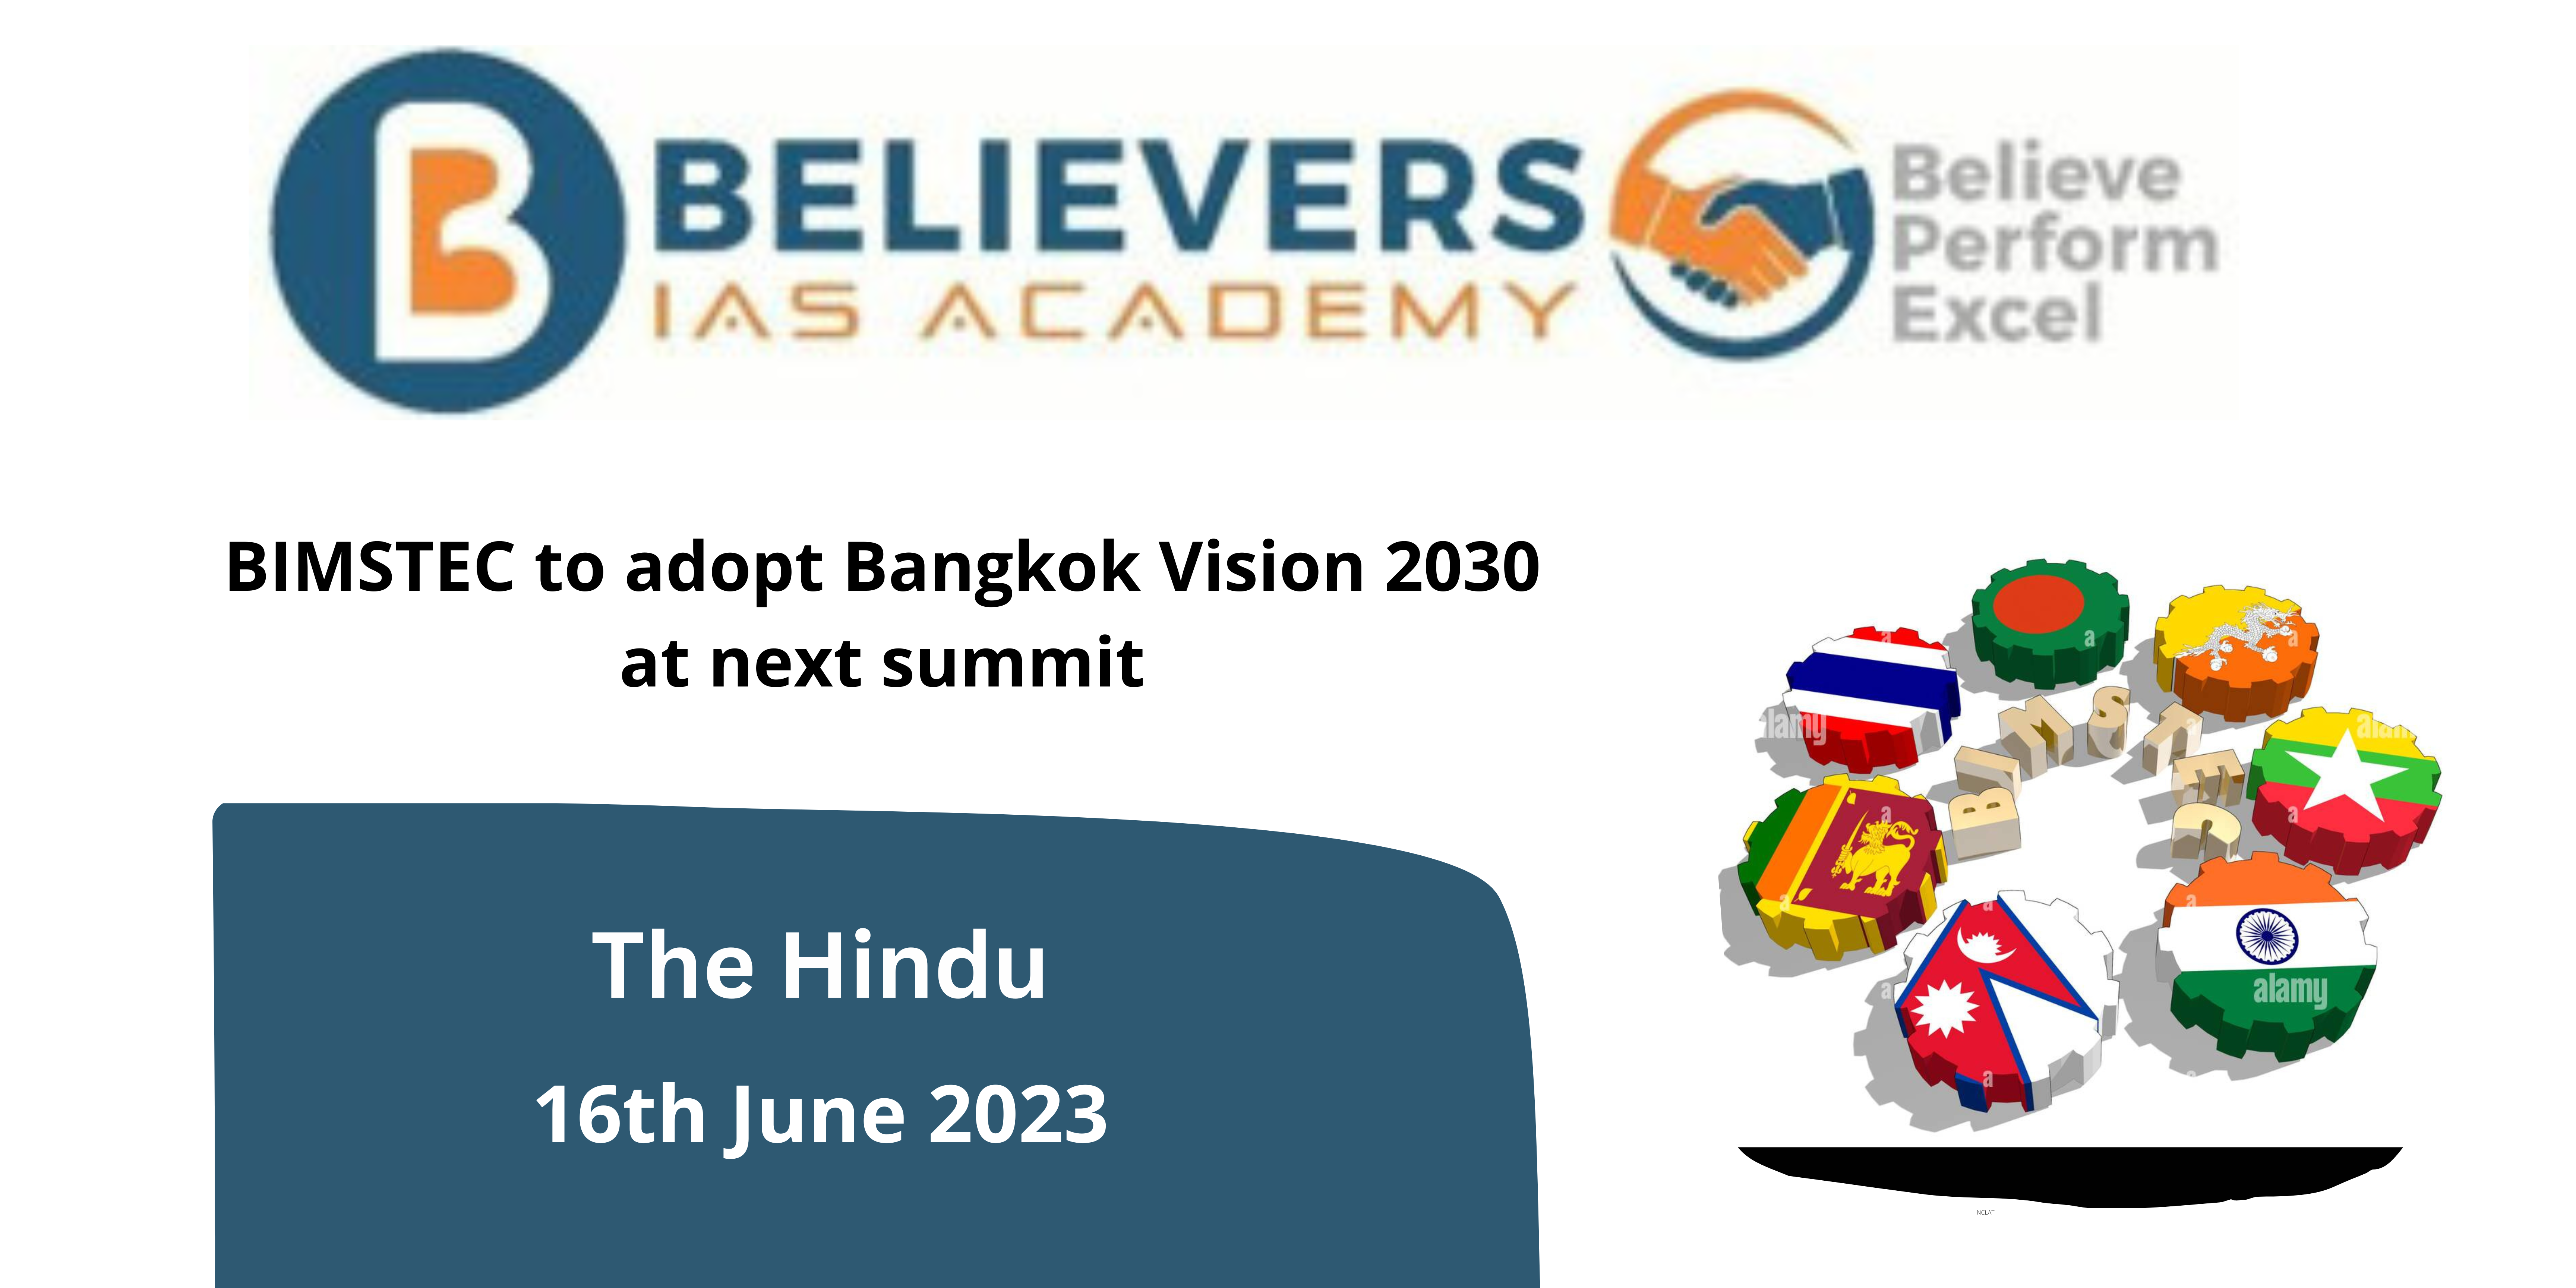 BIMSTEC to adopt Bangkok Vision 2030 at next summit